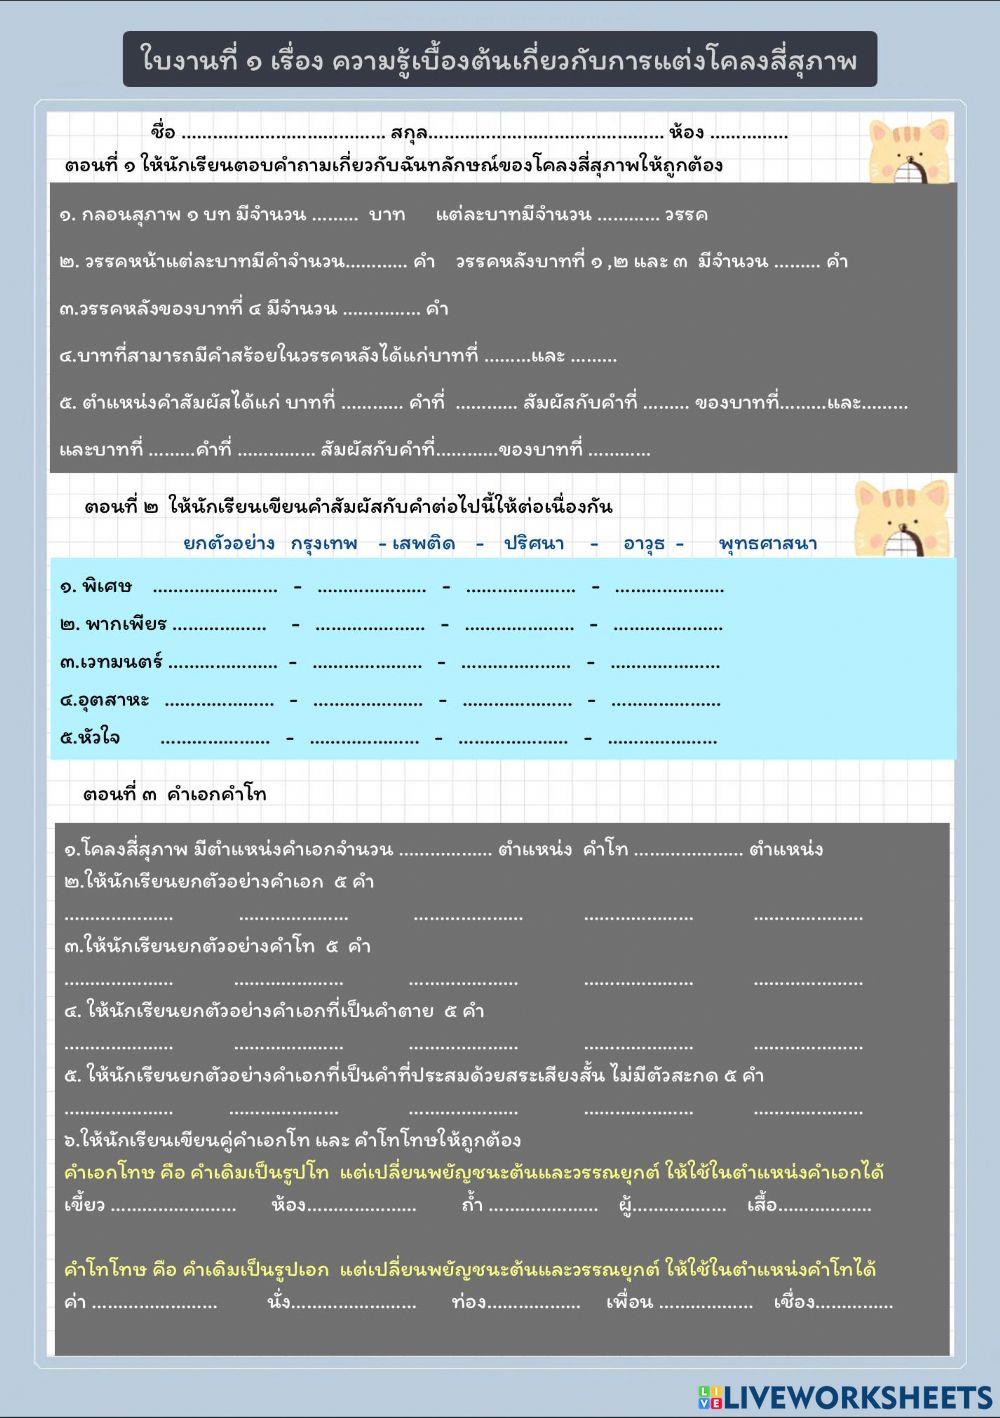 ภาษาไทย หลักการแต่งโคลงสี่สุภาพ